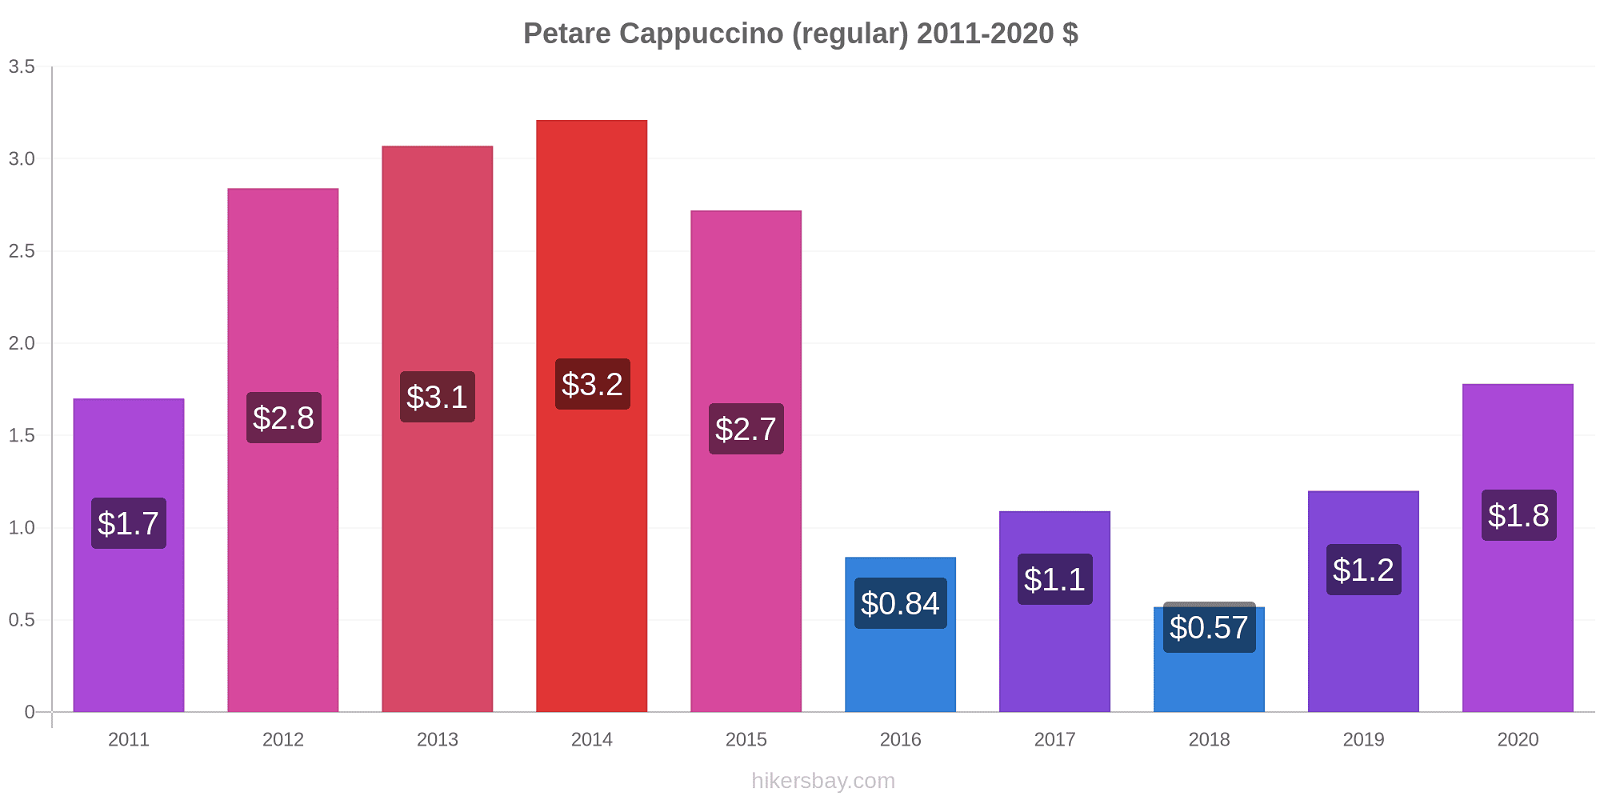 Petare price changes Cappuccino (regular) hikersbay.com